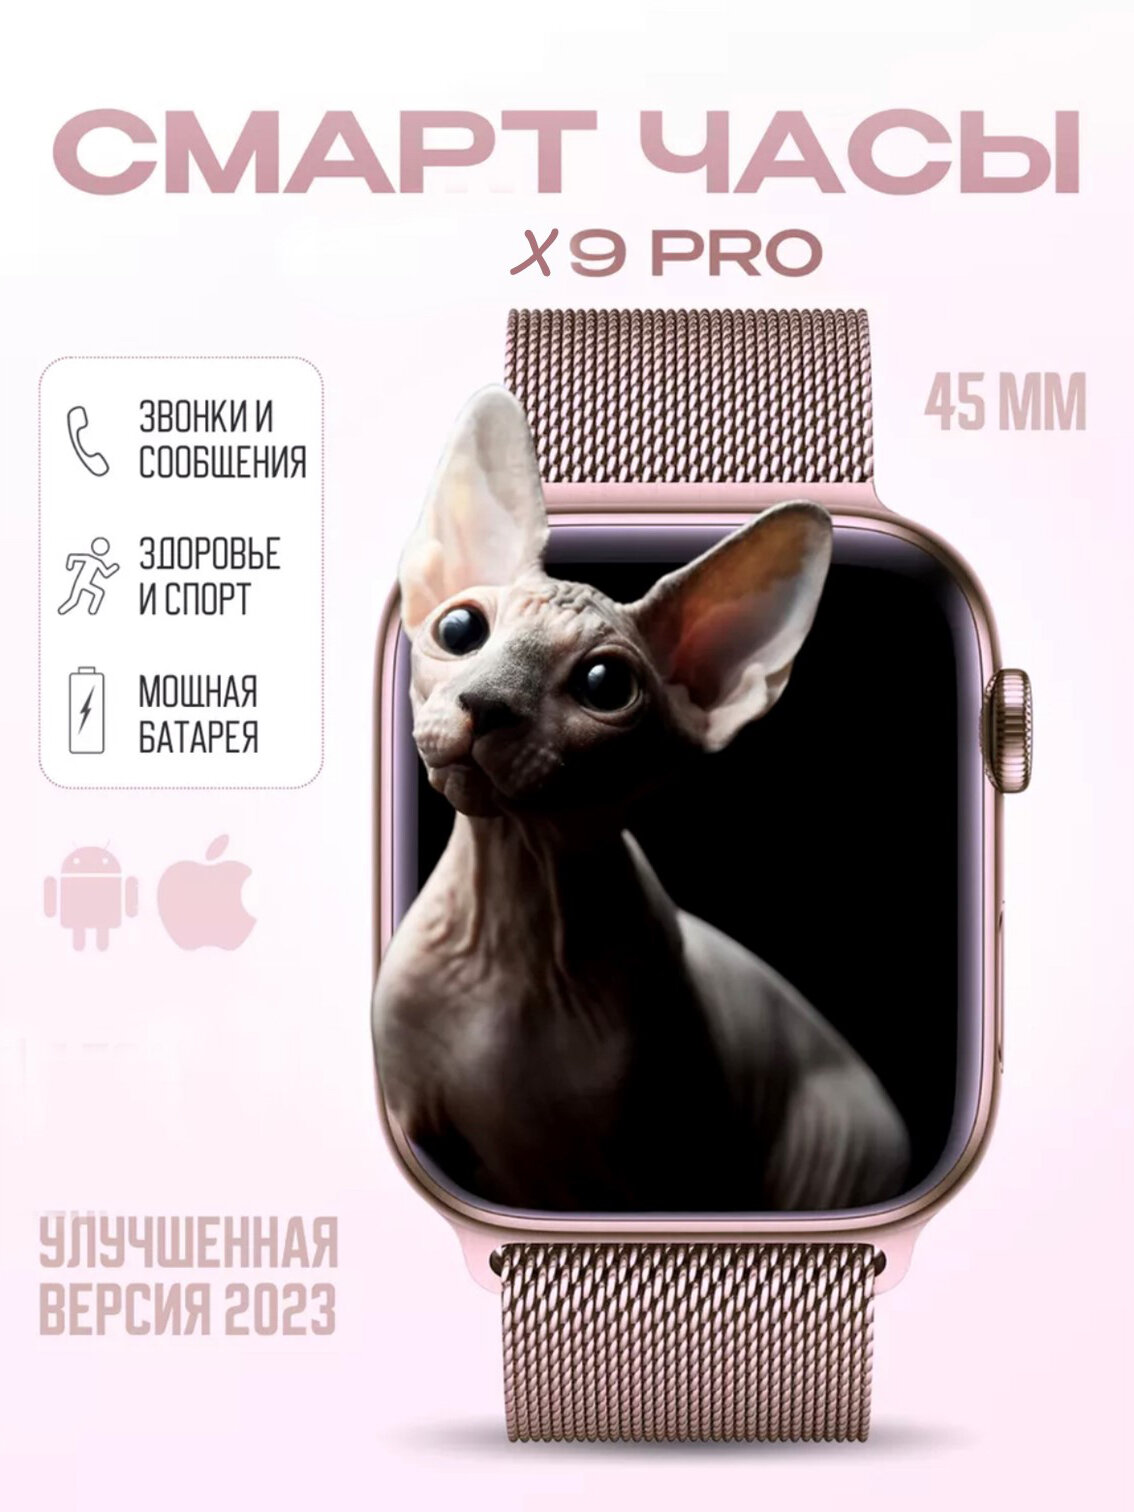 Смарт часы Х9 PRO 3 ремешка AMOLED / Умные часы iOS Android розовые